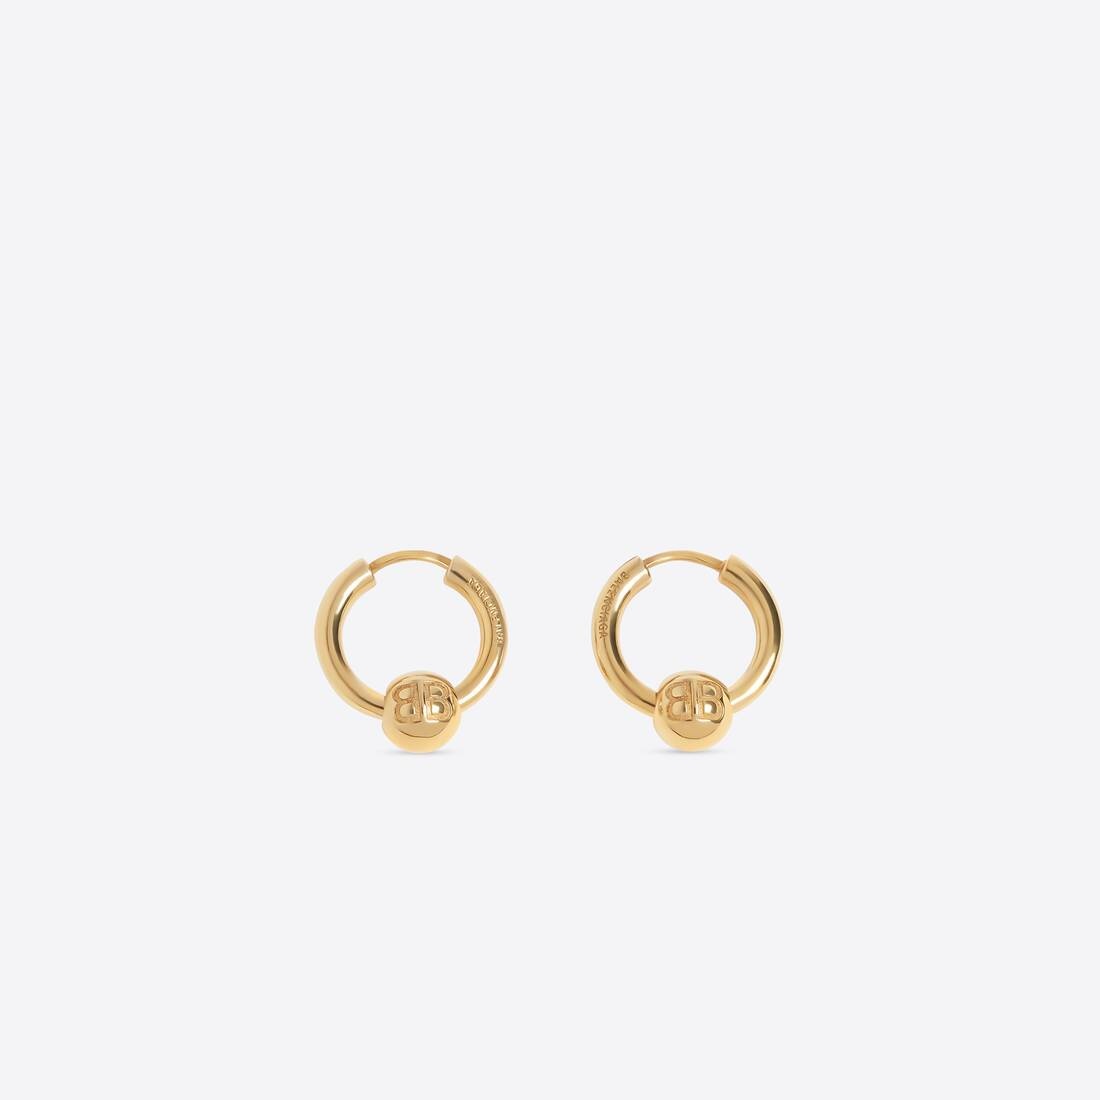 Force Xs Earrings in Gold - 2